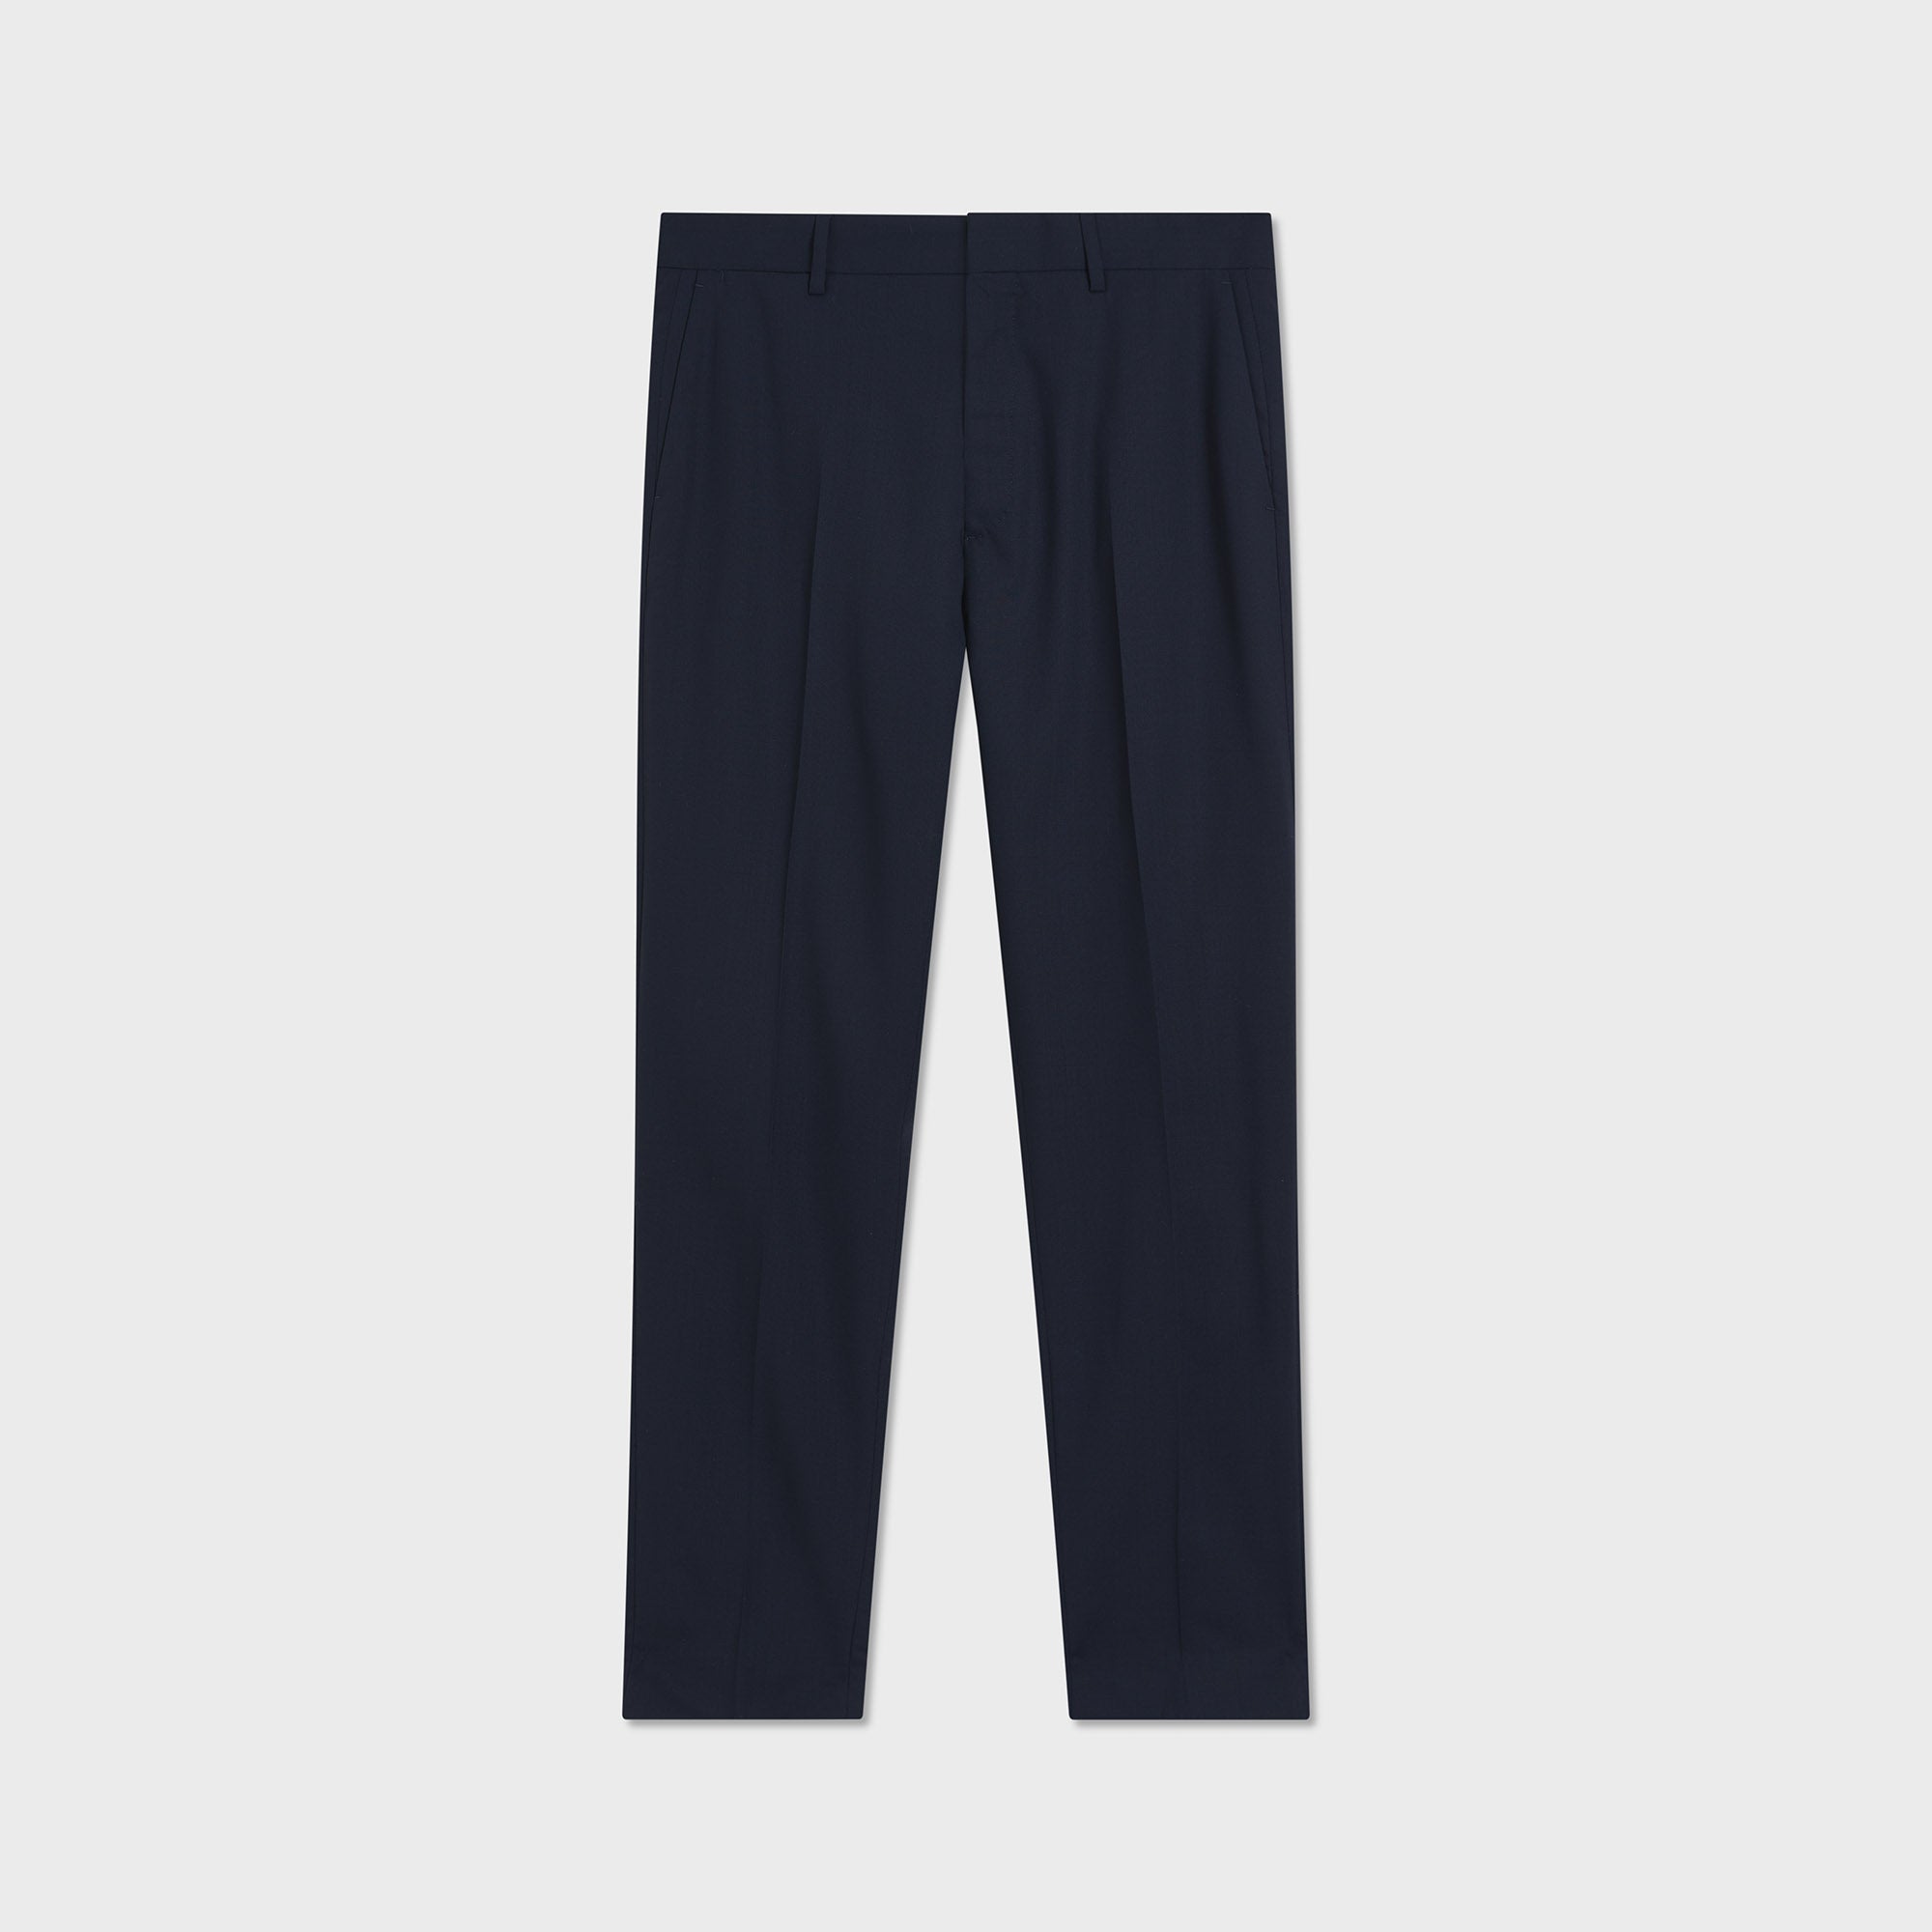 Buy PARK AVENUE Grey Mens Smart Fit Plain Trousers | Shoppers Stop